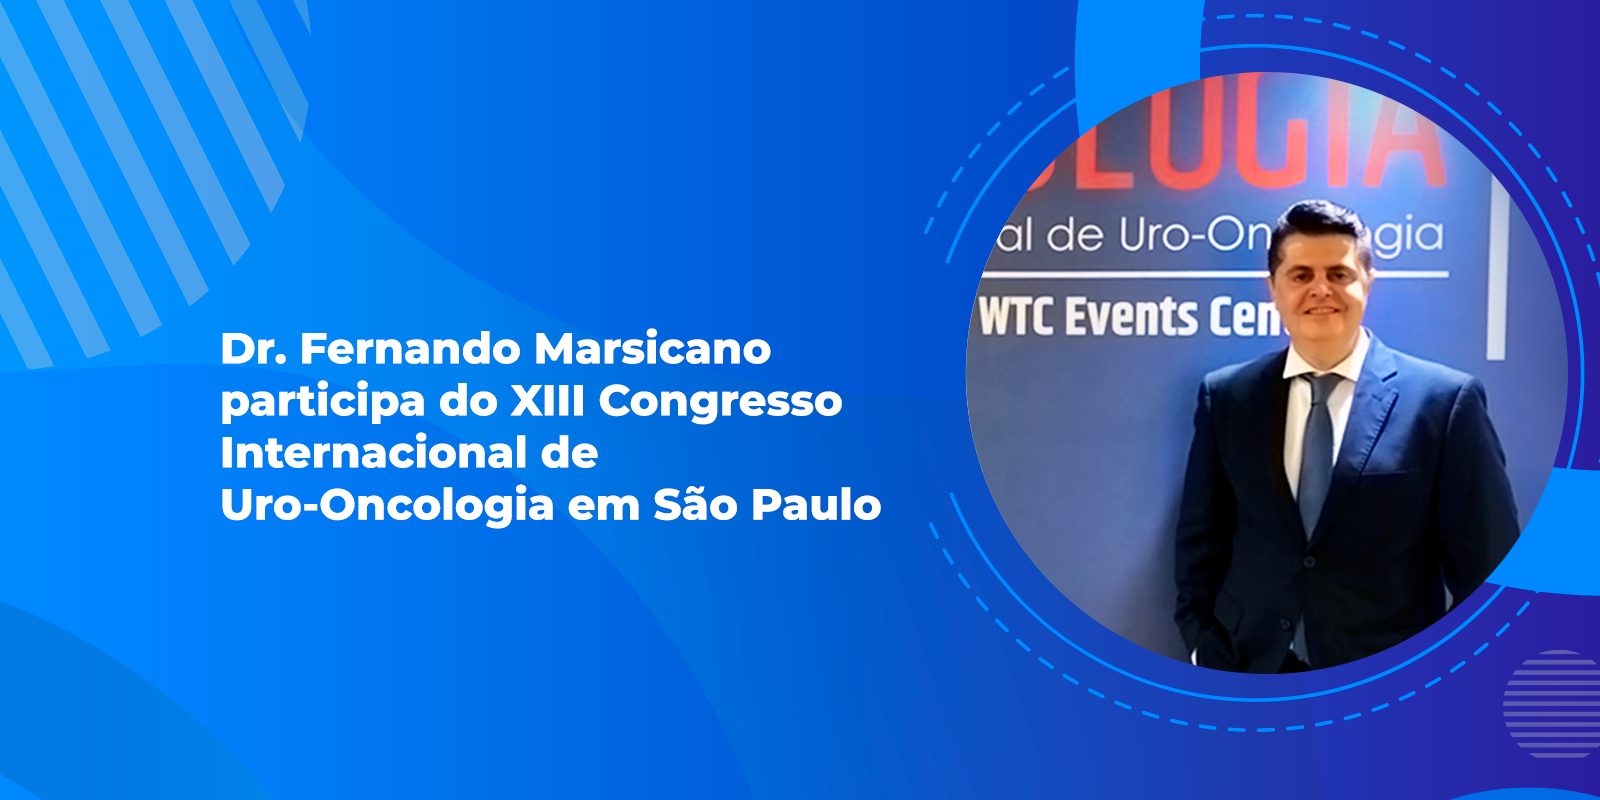 Dr. Fernando Marsicano participa do XIII Congresso Internacional de Uro-Oncologia em São Paulo